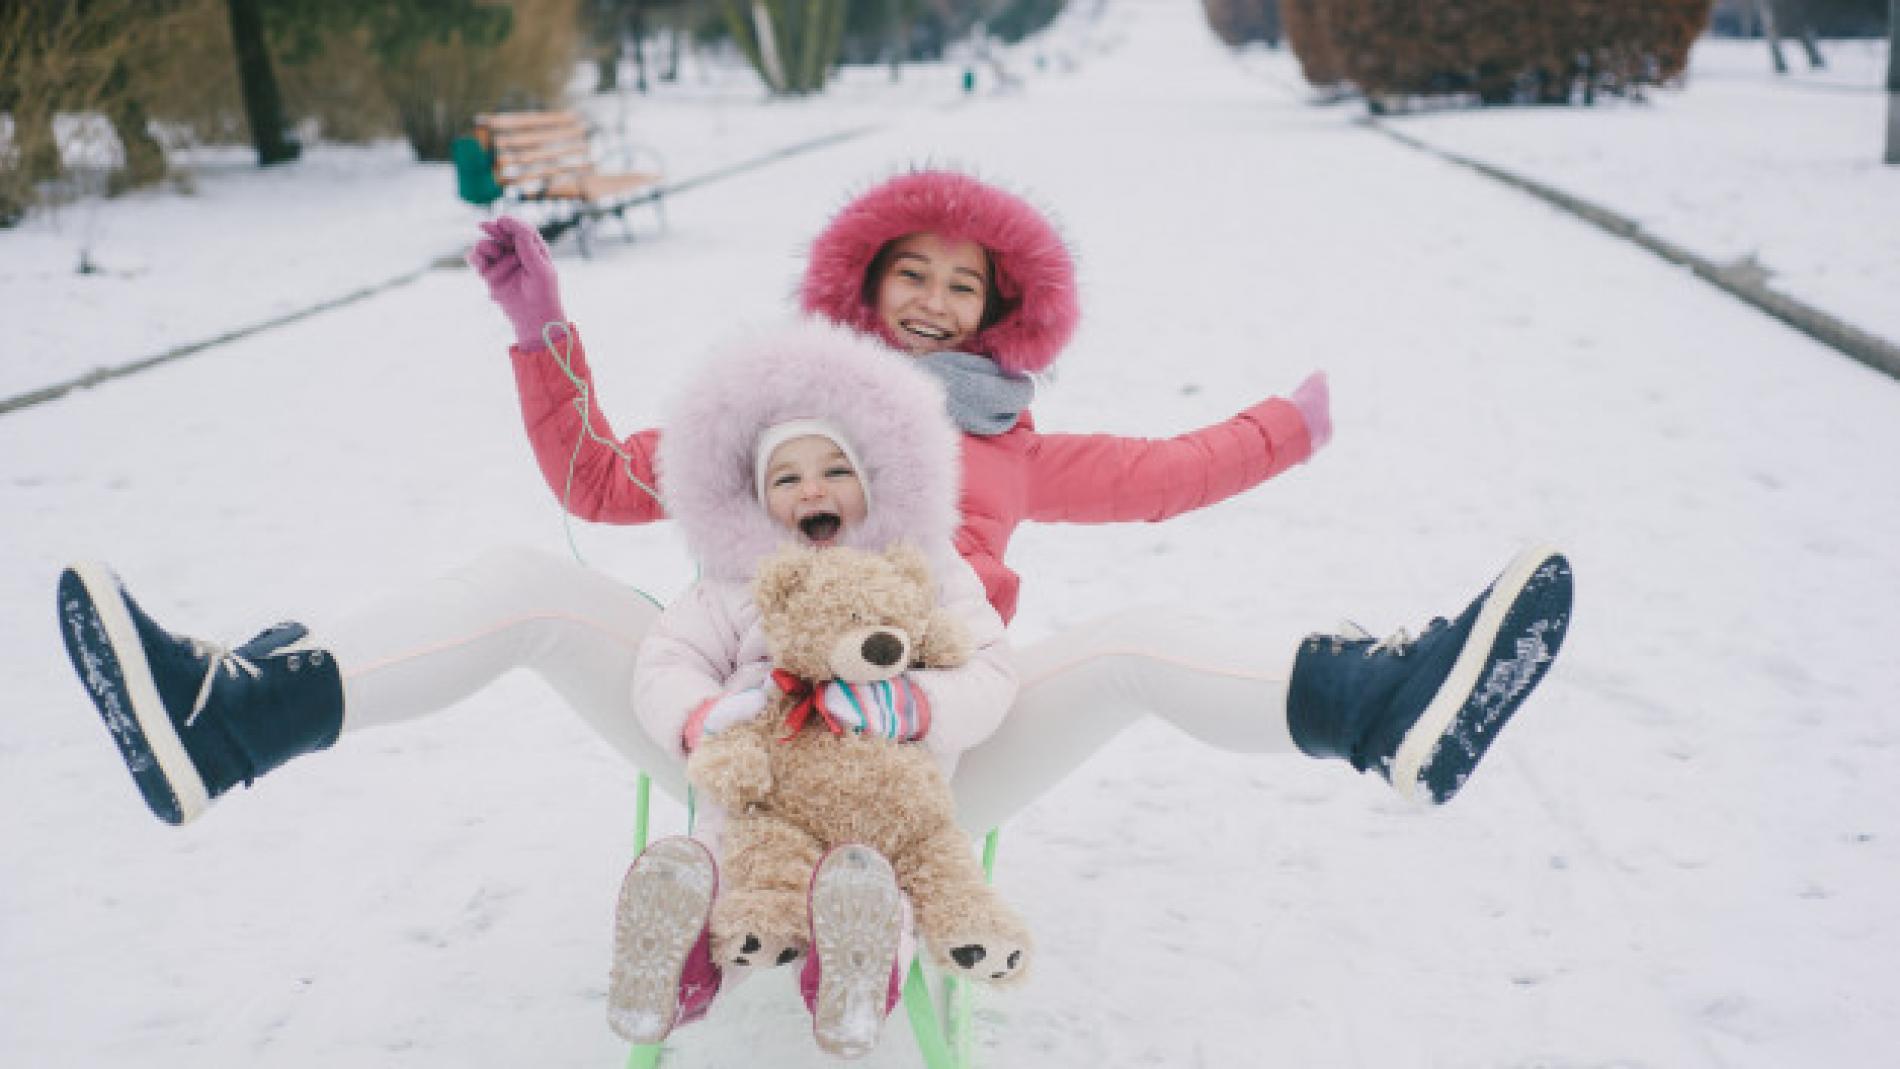 Ropa de invierno que no puede faltar en un viaje a la nieve con niños